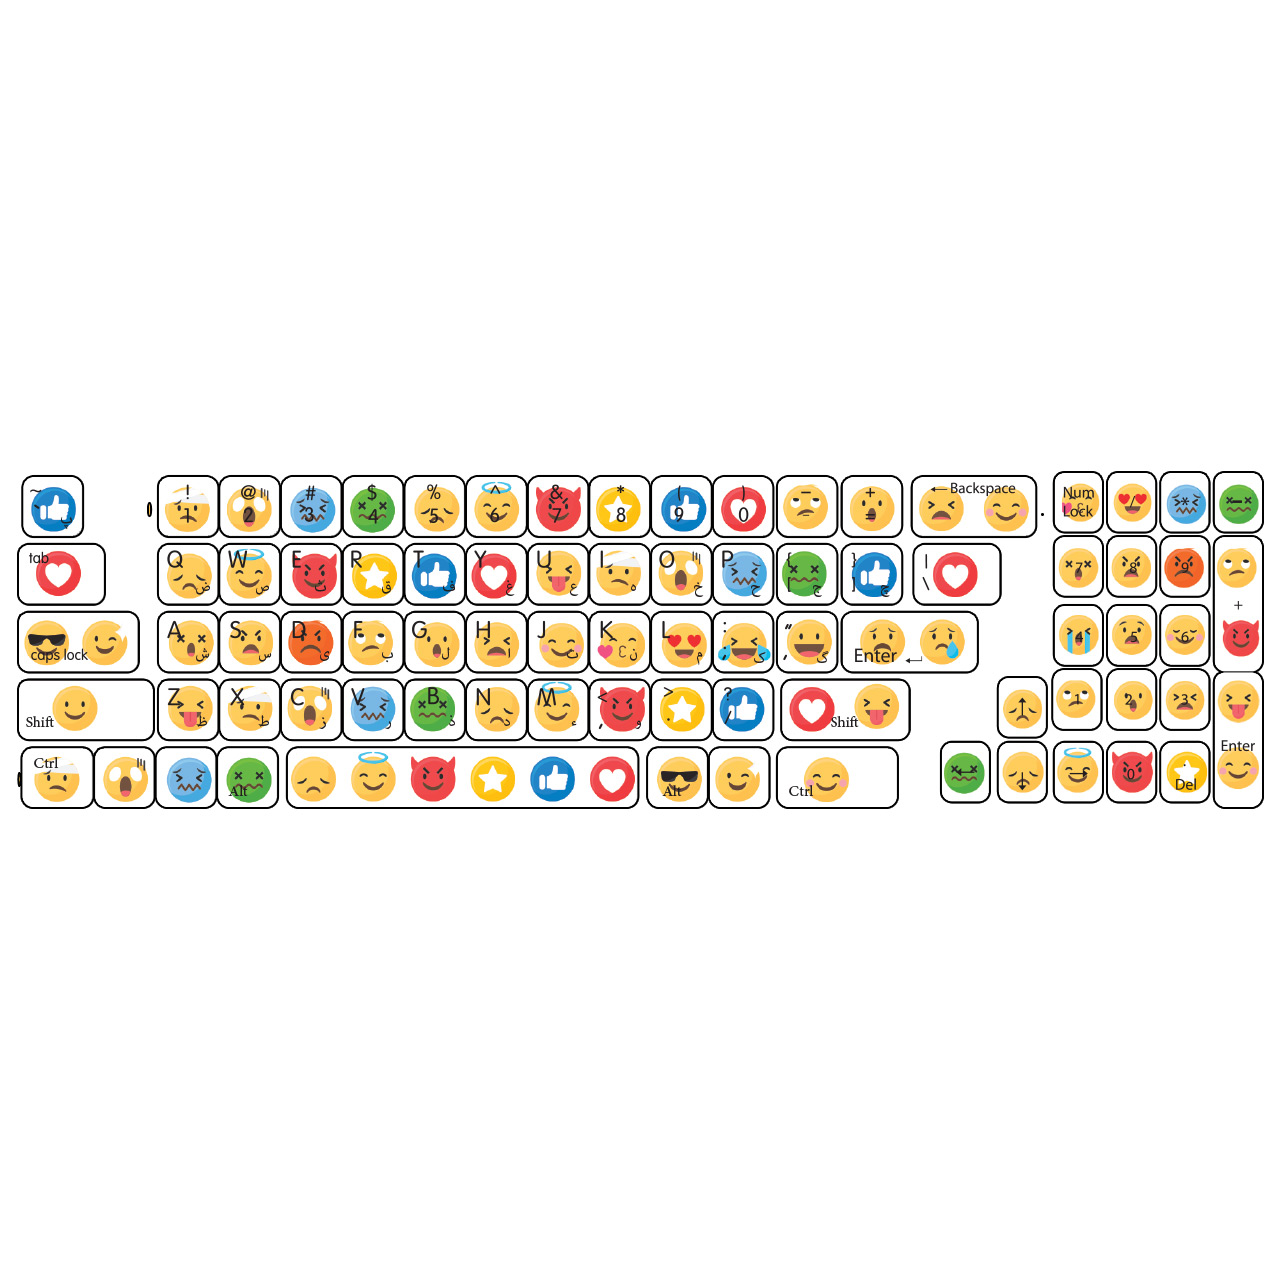 برچسب  حروف فارسی کیبورد گراسیپا طرح ایموجی  کد ۱۰۱